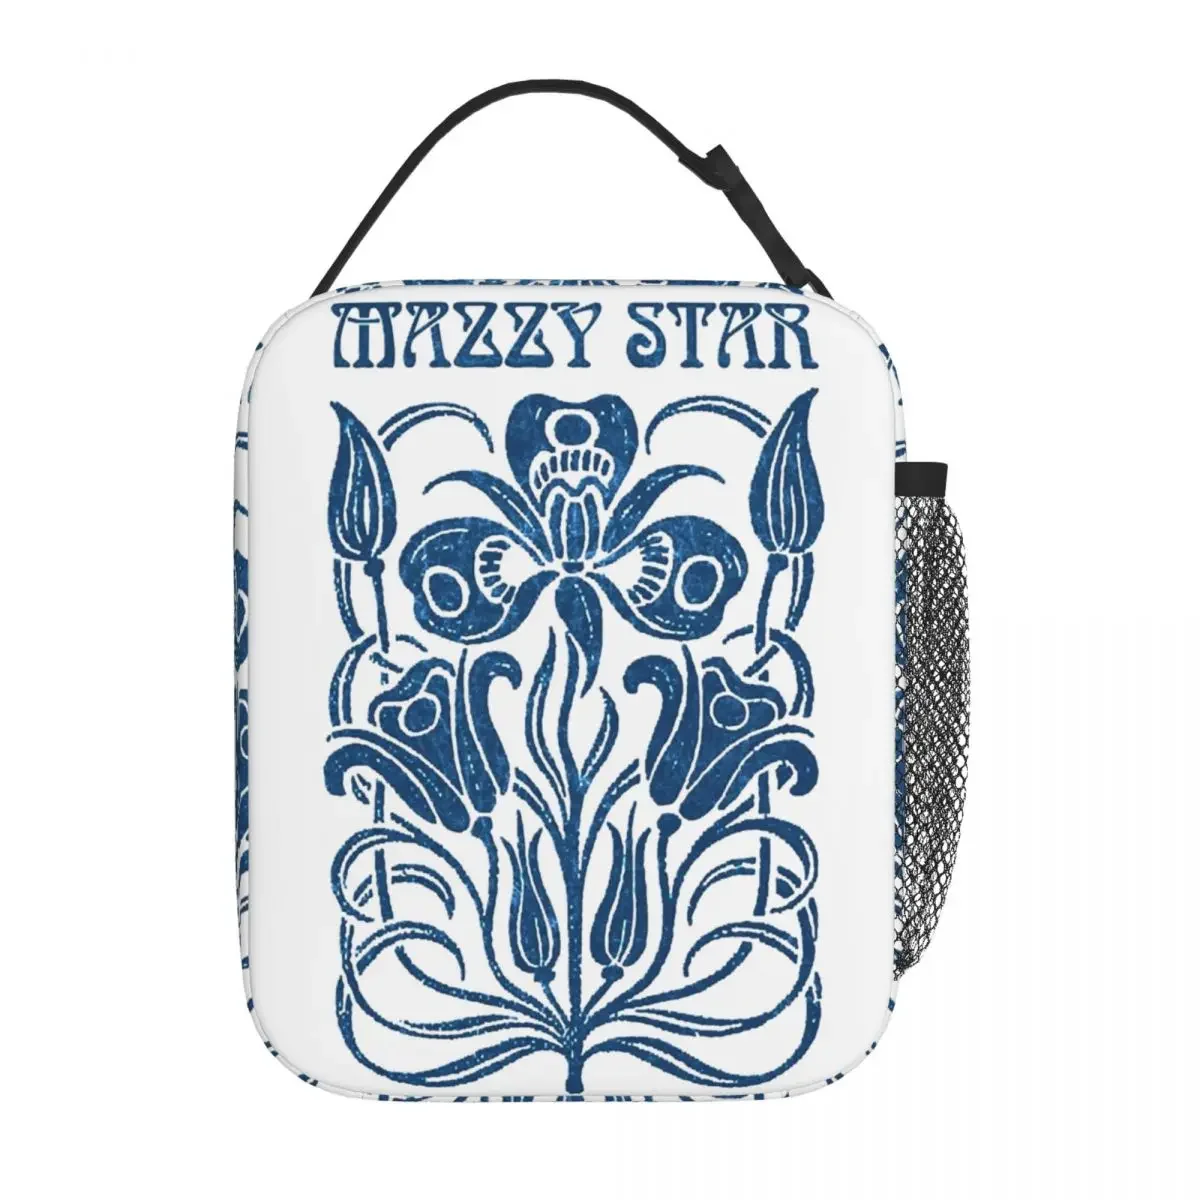 Фотография Mazzy Star Изолированная сумка для ланча Термоконтейнер для ланча Музыкальная группа Портативная сумка-ланч-бокс Мужчины Женщины Путешествия в колледж Изображение 0 